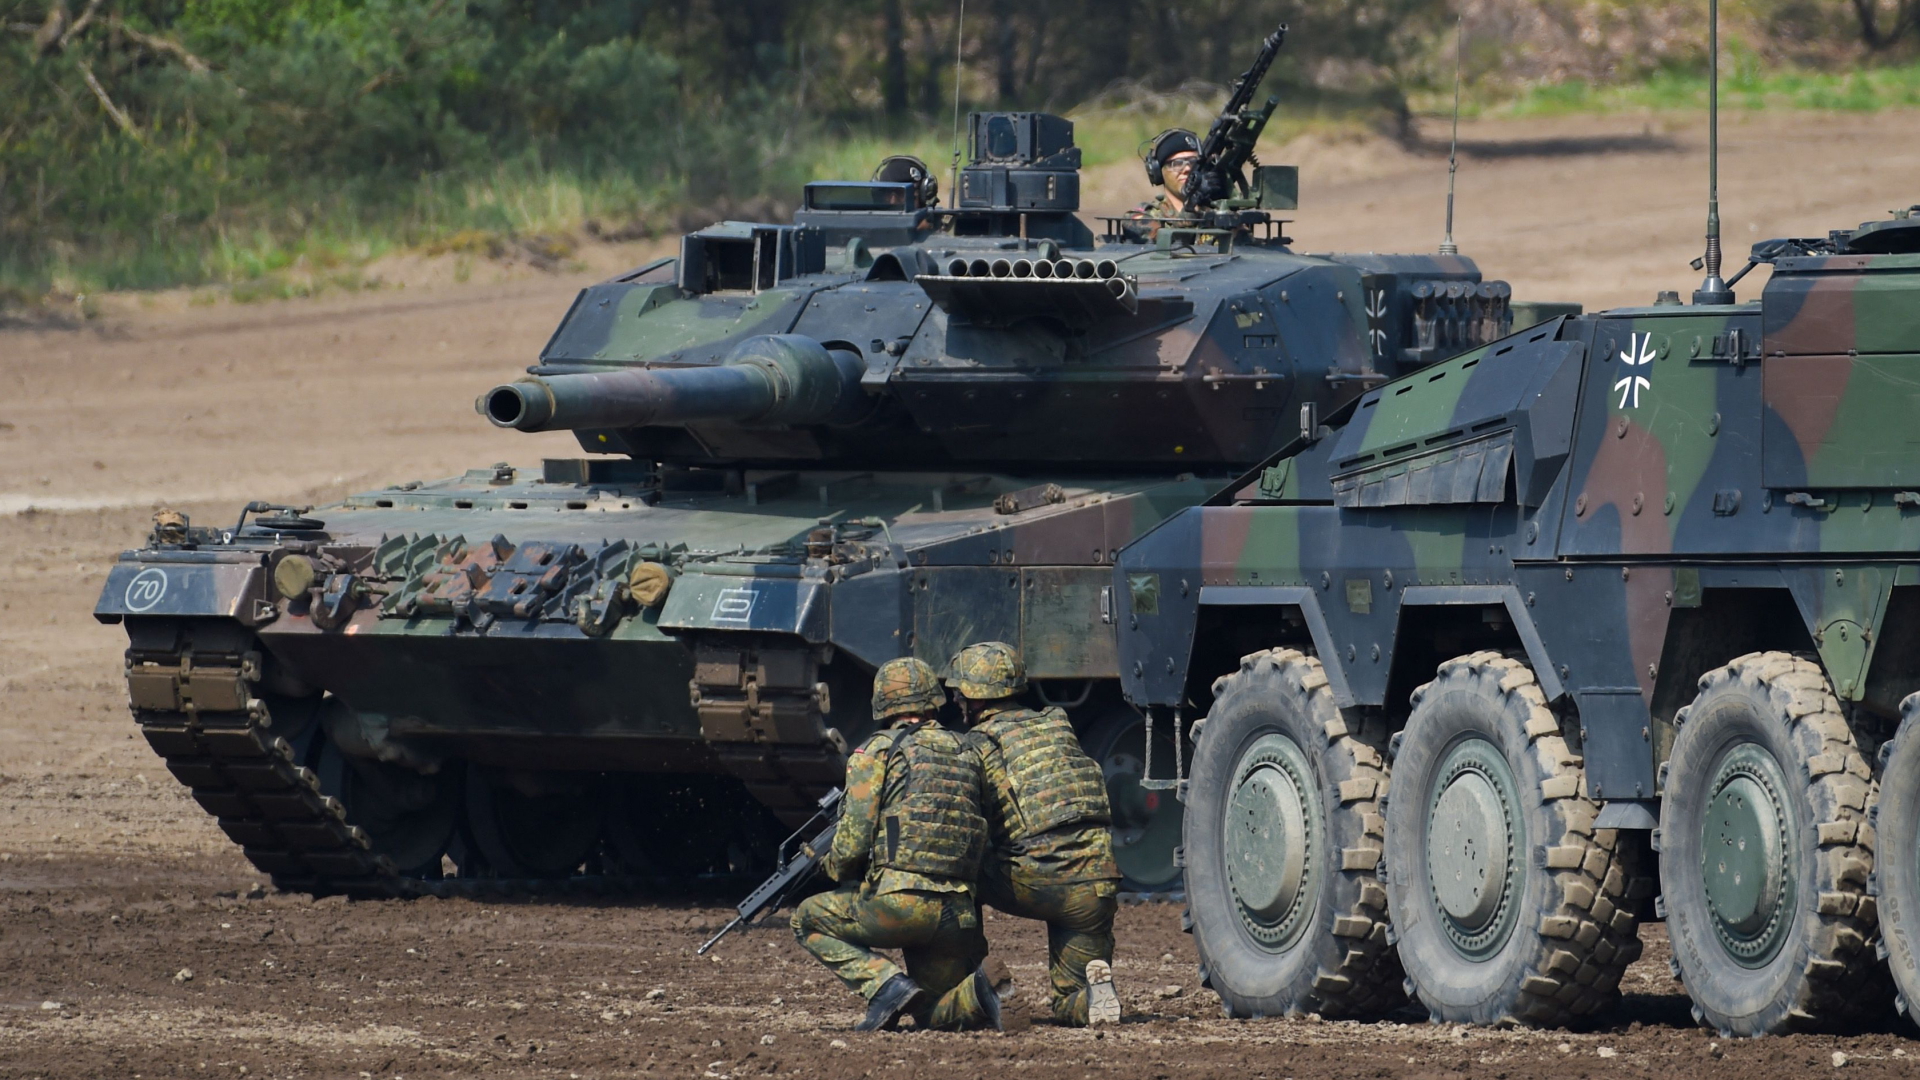 NATO-Kommandant: “Fähig und bereit, NATO-Gebiet zu verteidigen”